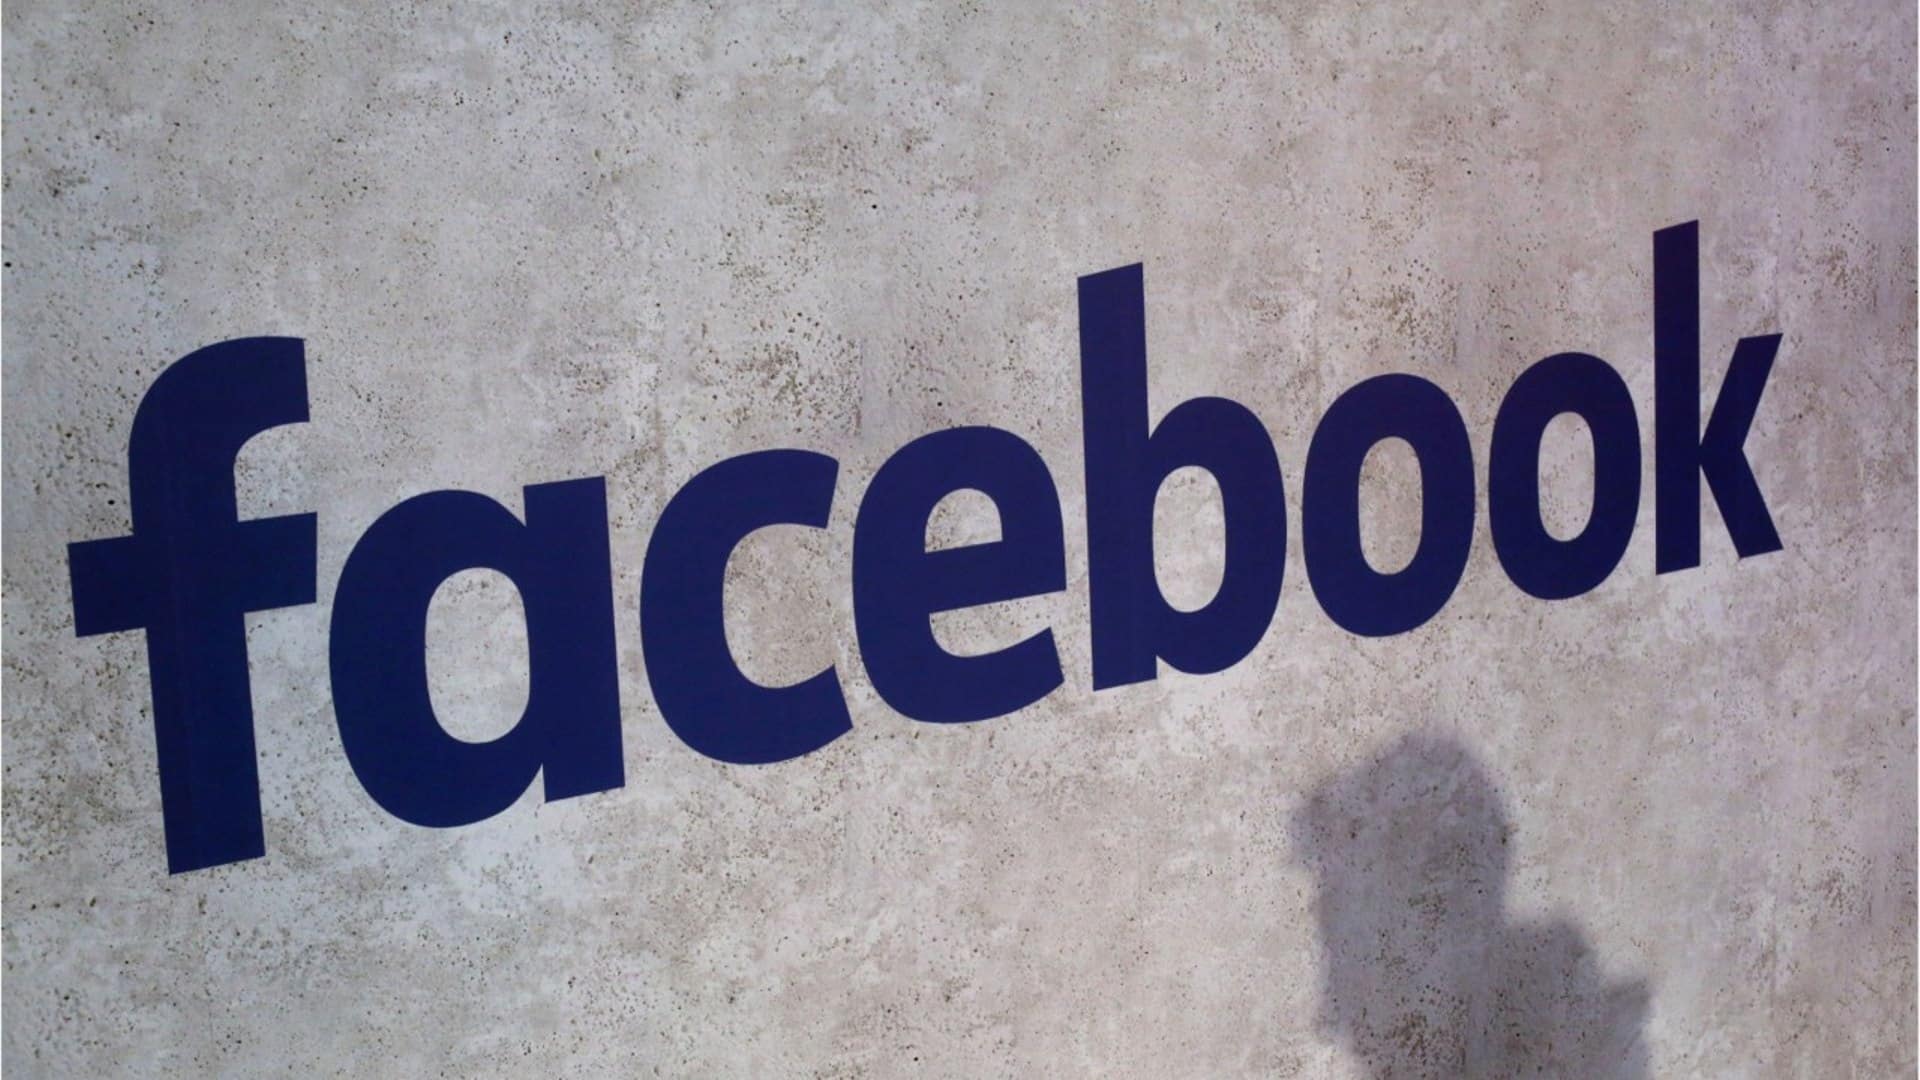 تقرير: محررو فيسبوك يعتمدون على معلومات غير دقيقة